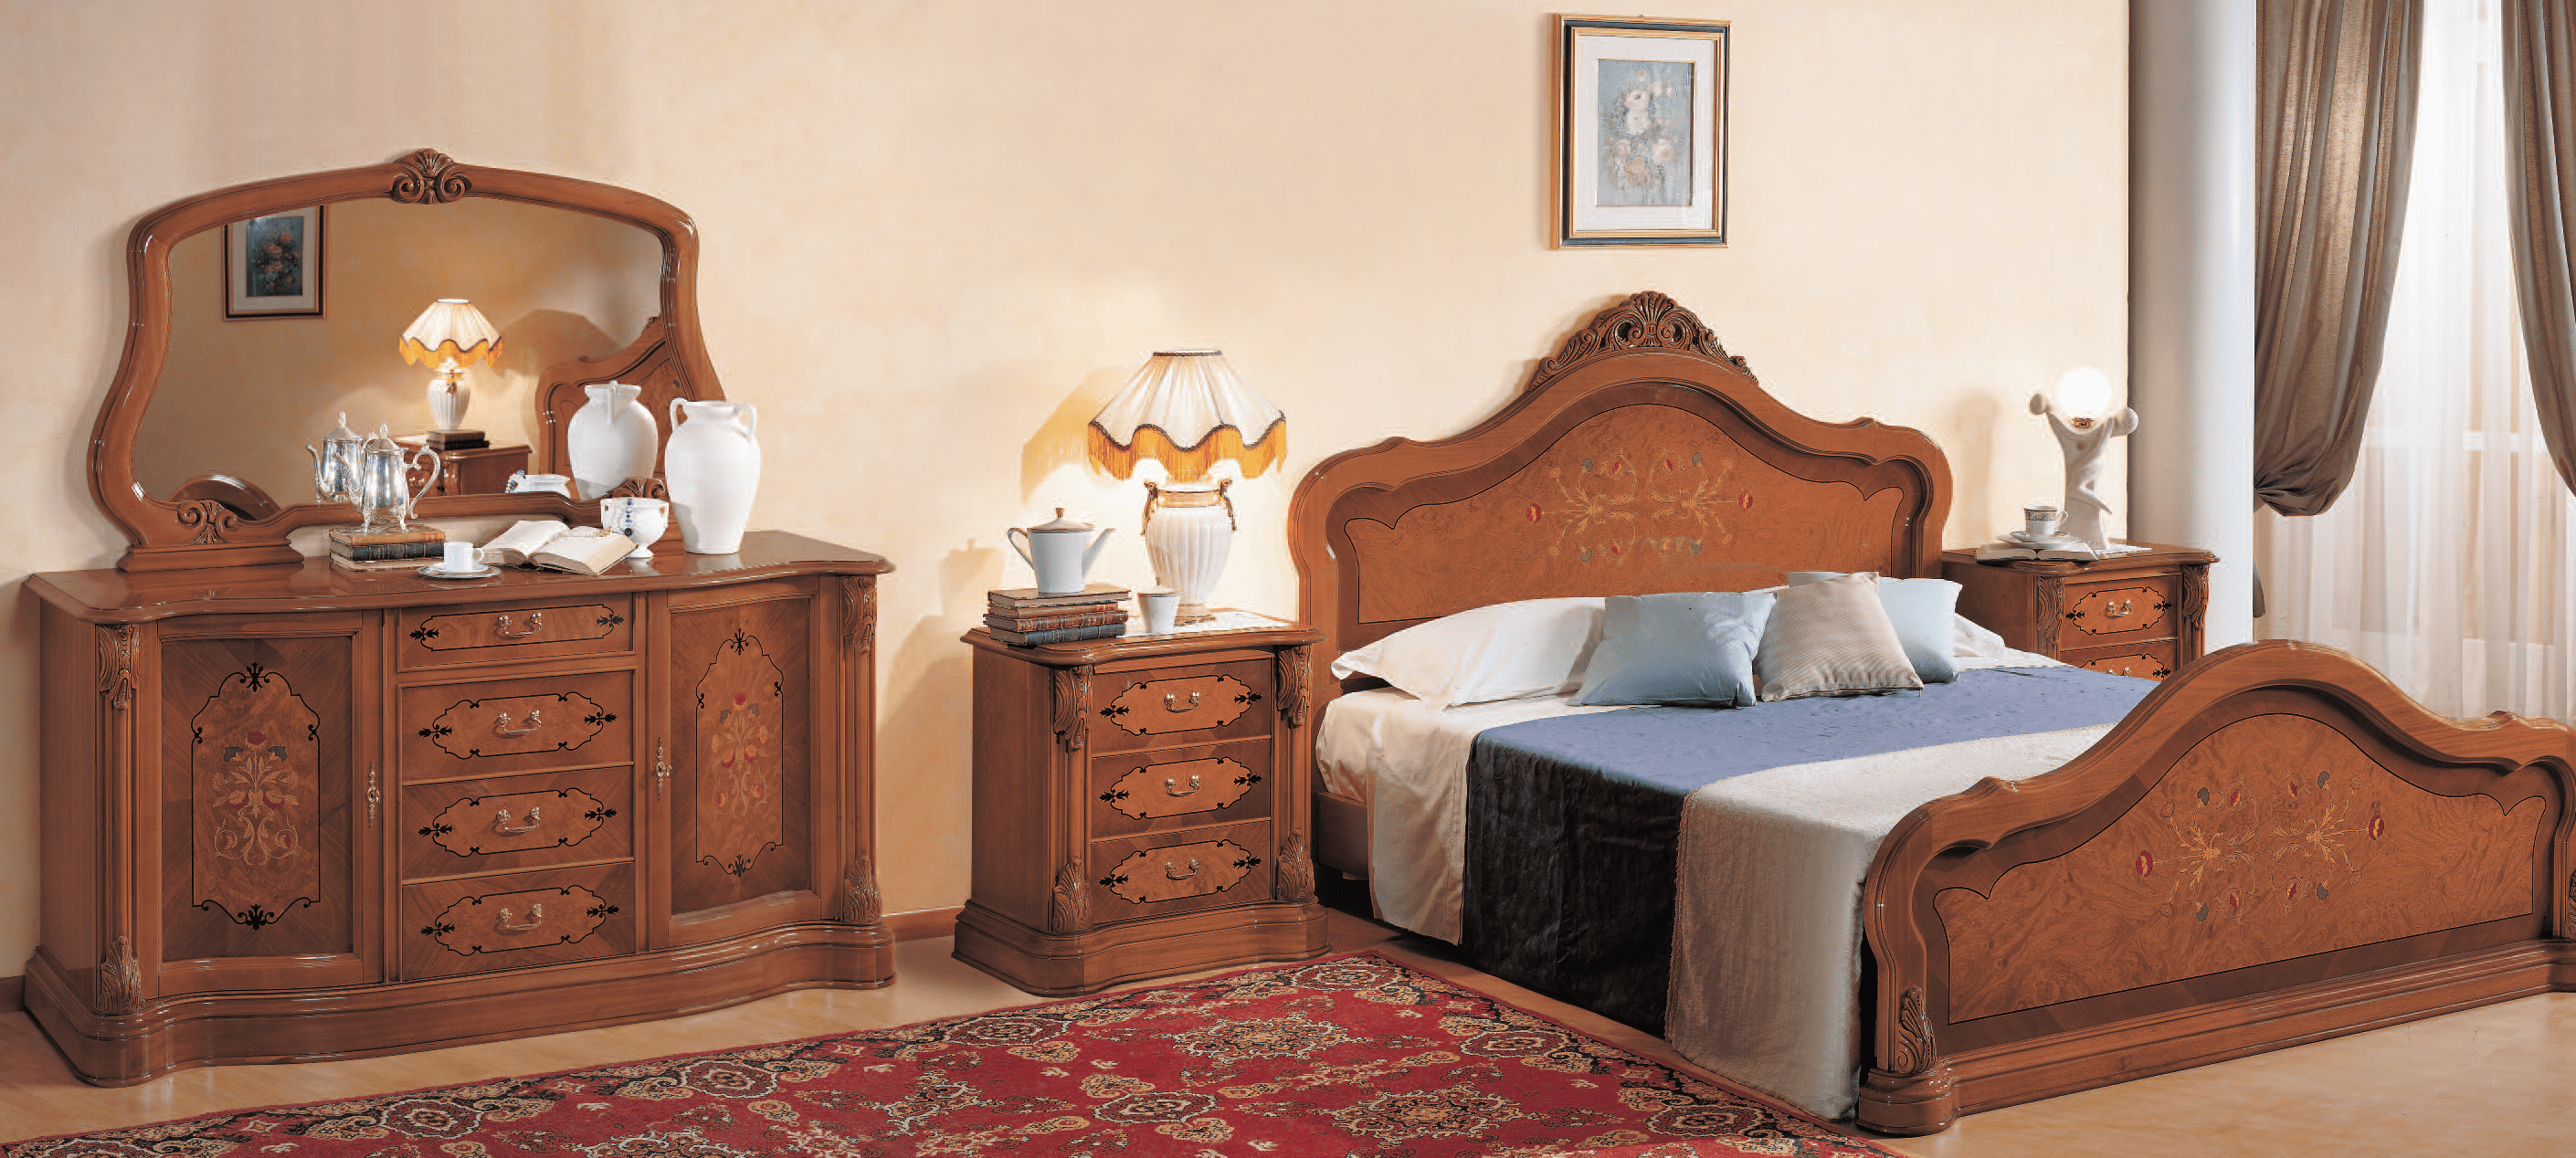 Спальня из коллекции Barocco из Италии